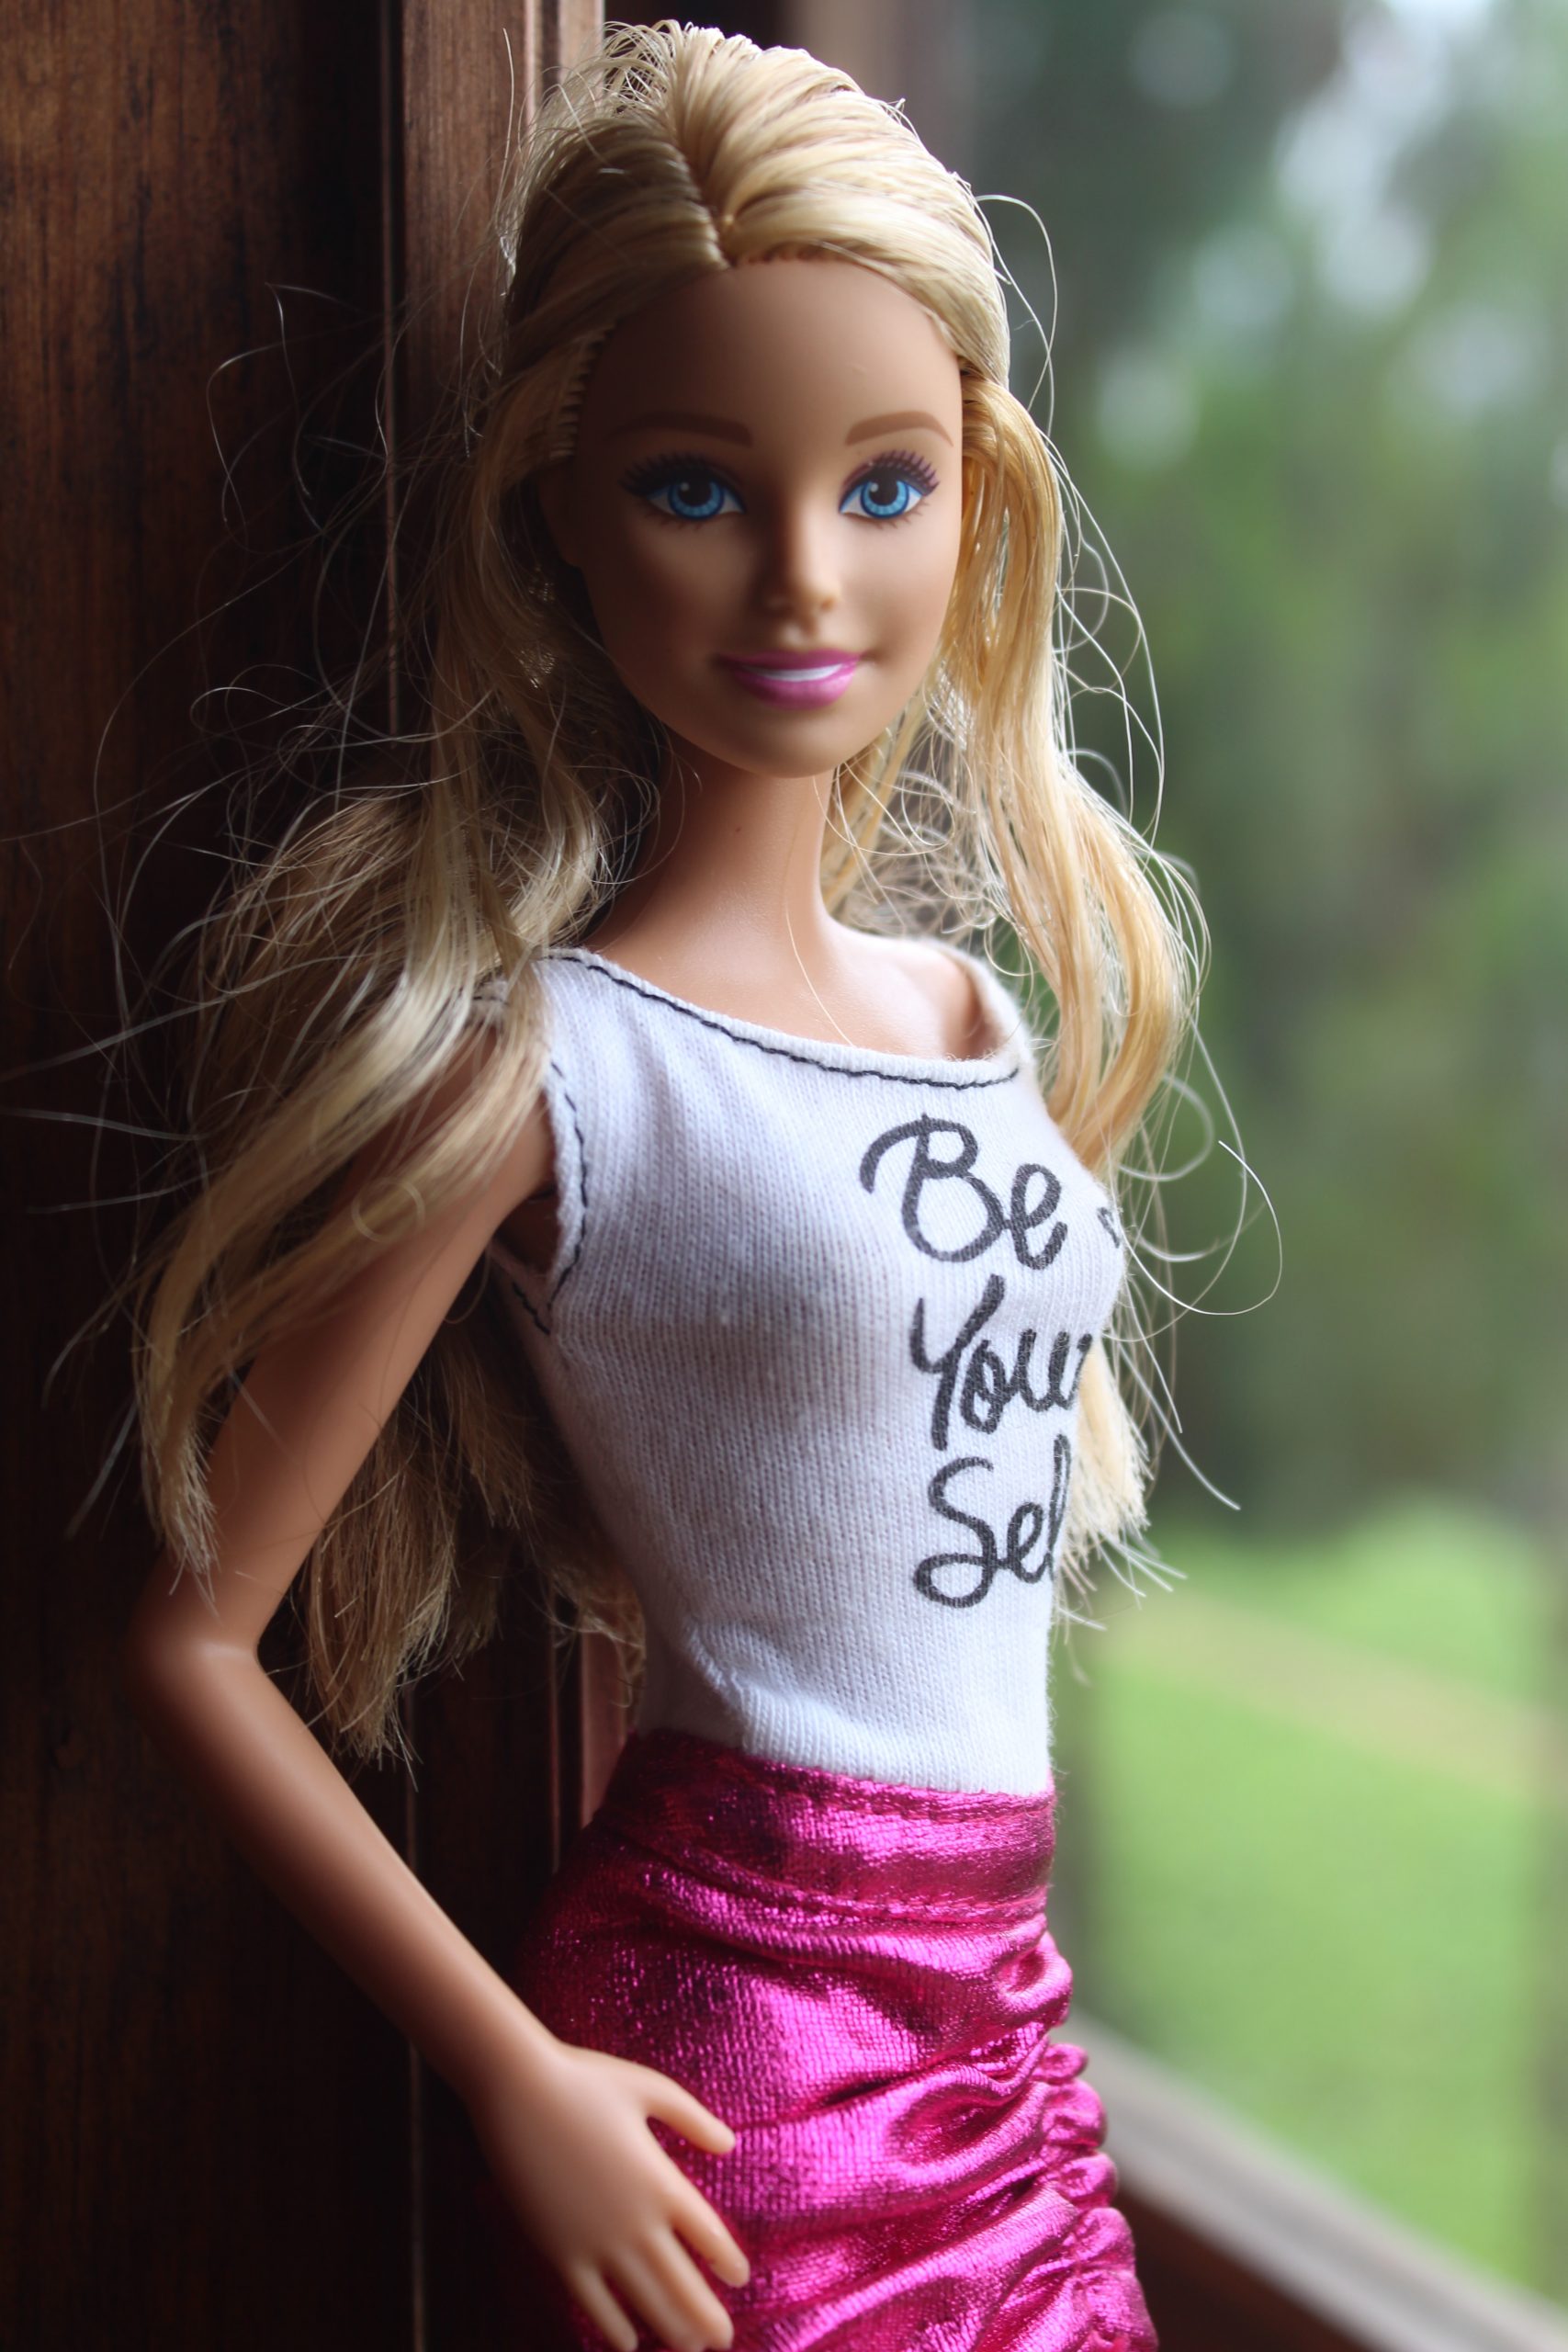 Trucco Barbie: come cambia e gli step per realizzarlo